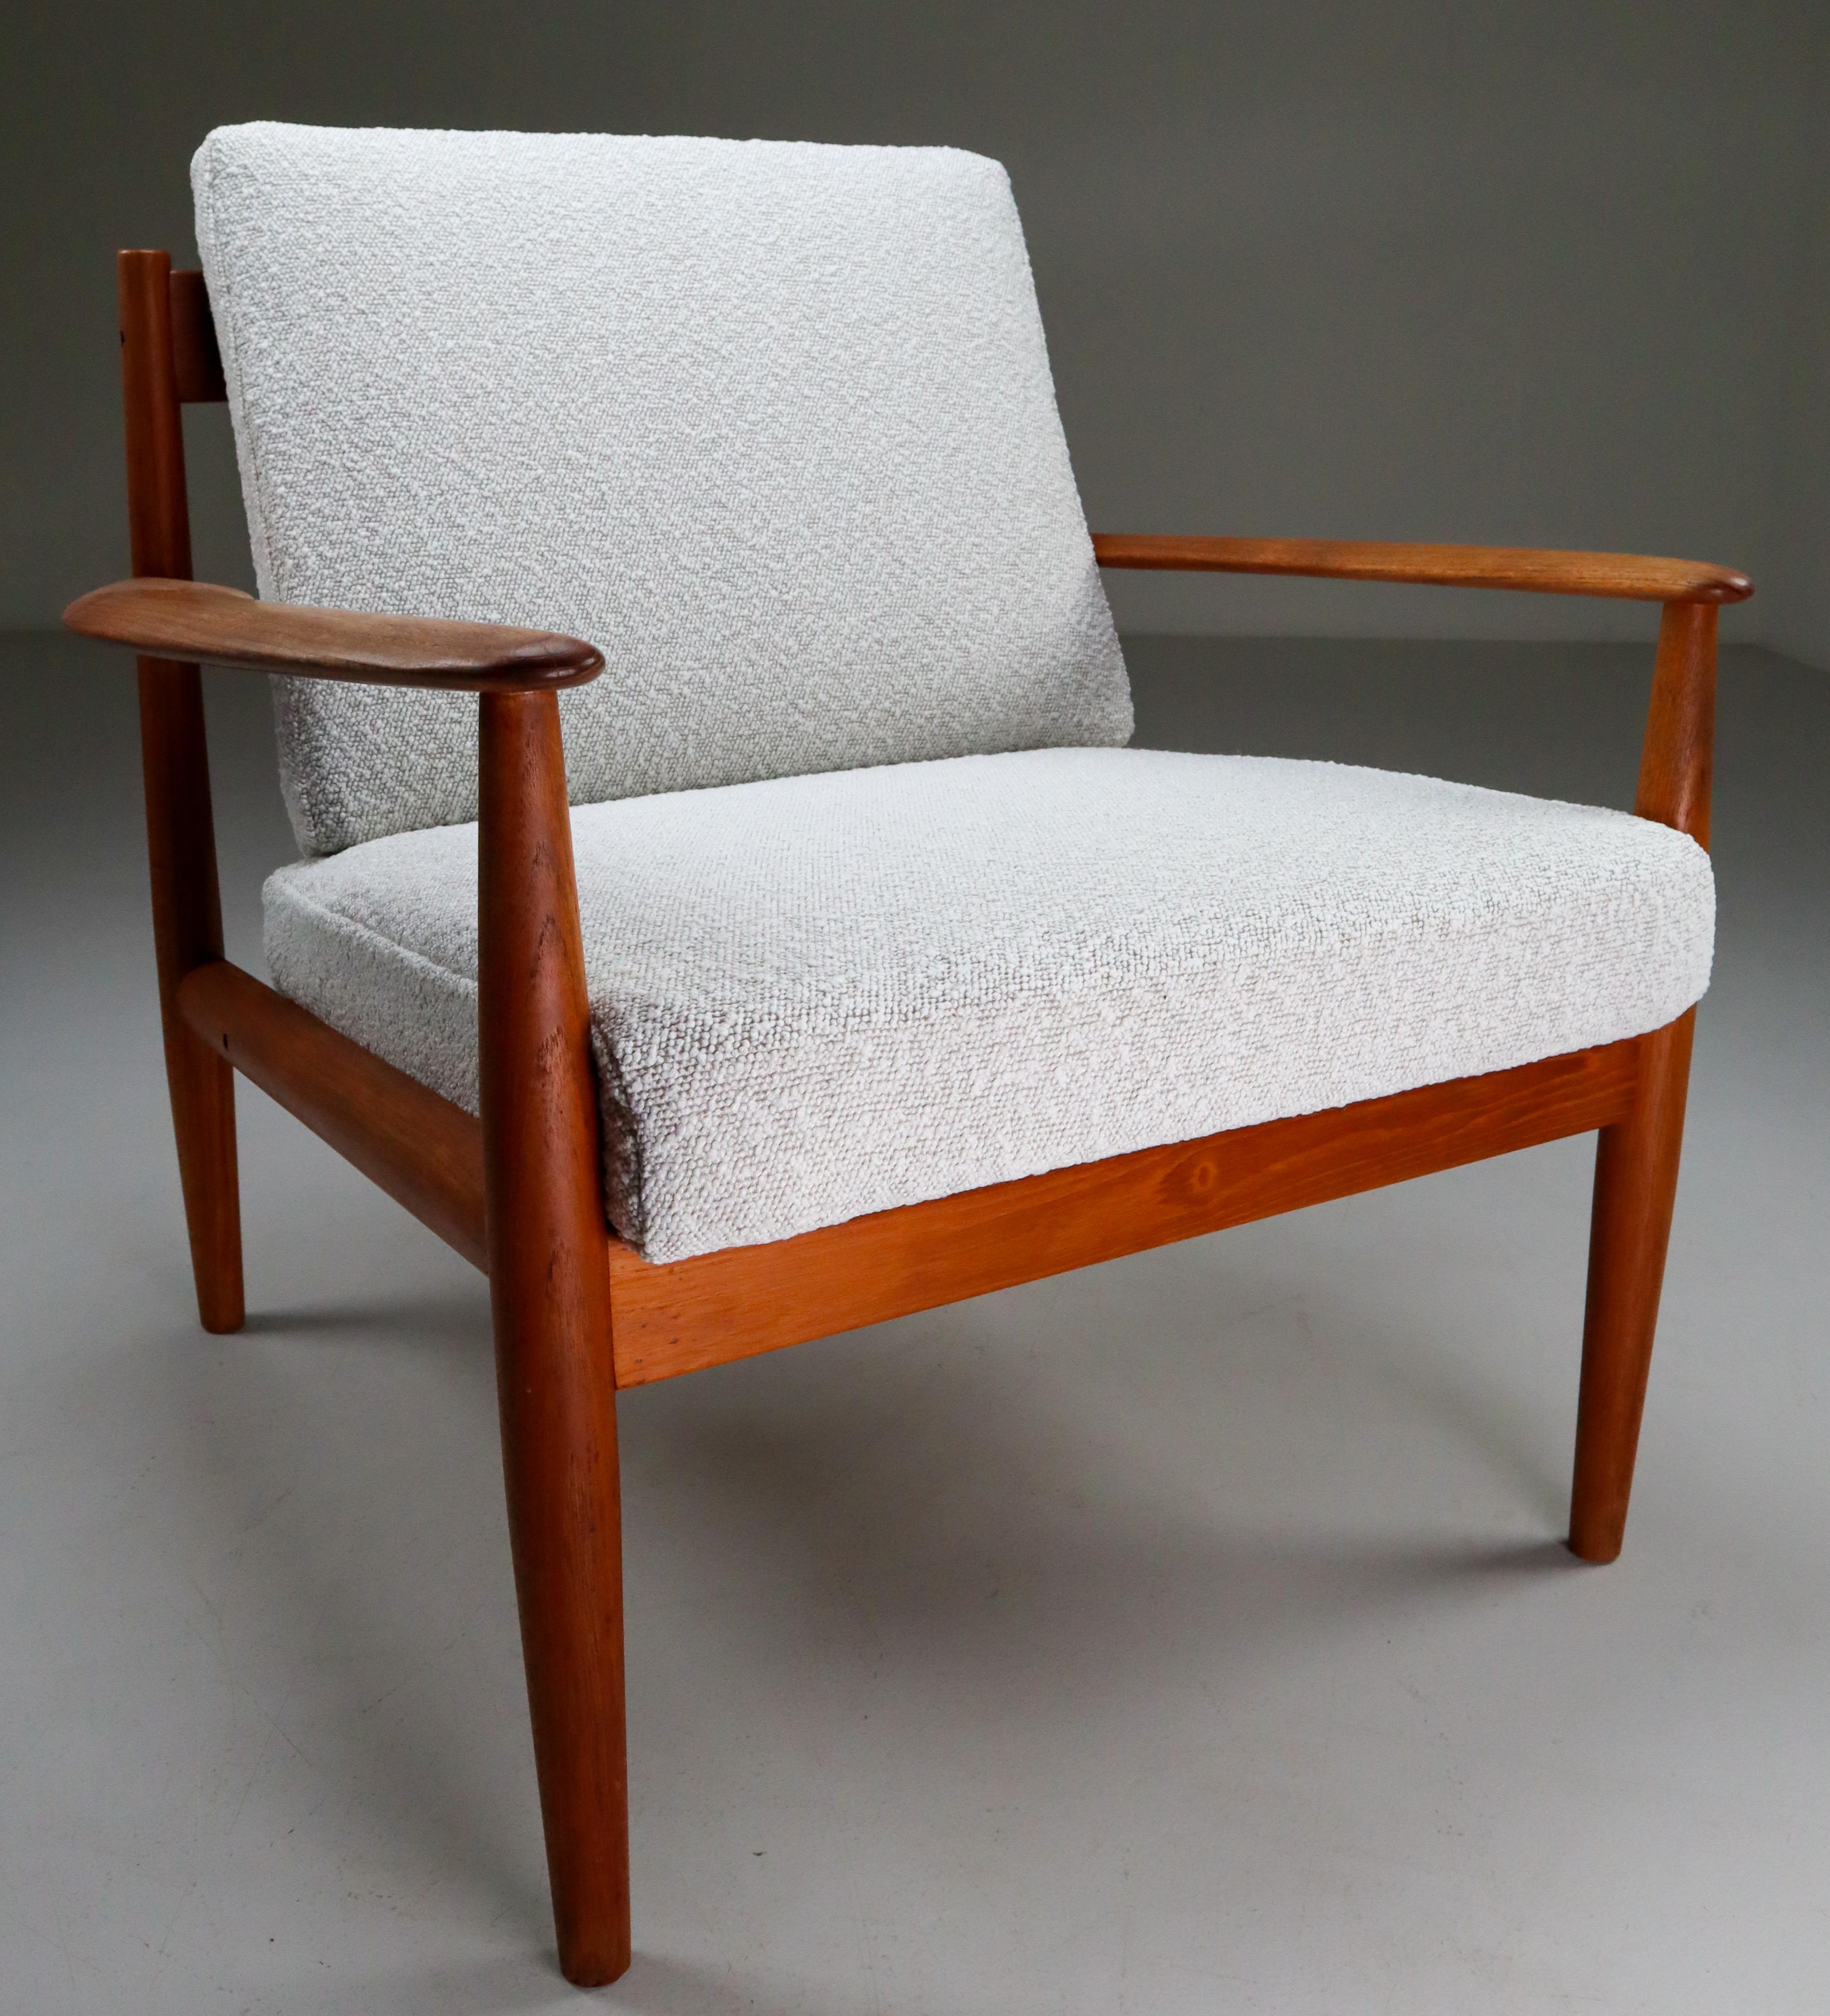 Danish Grete Jalk Teak Scandinavian Modern Lounge Chair for France & Søn, 1960s